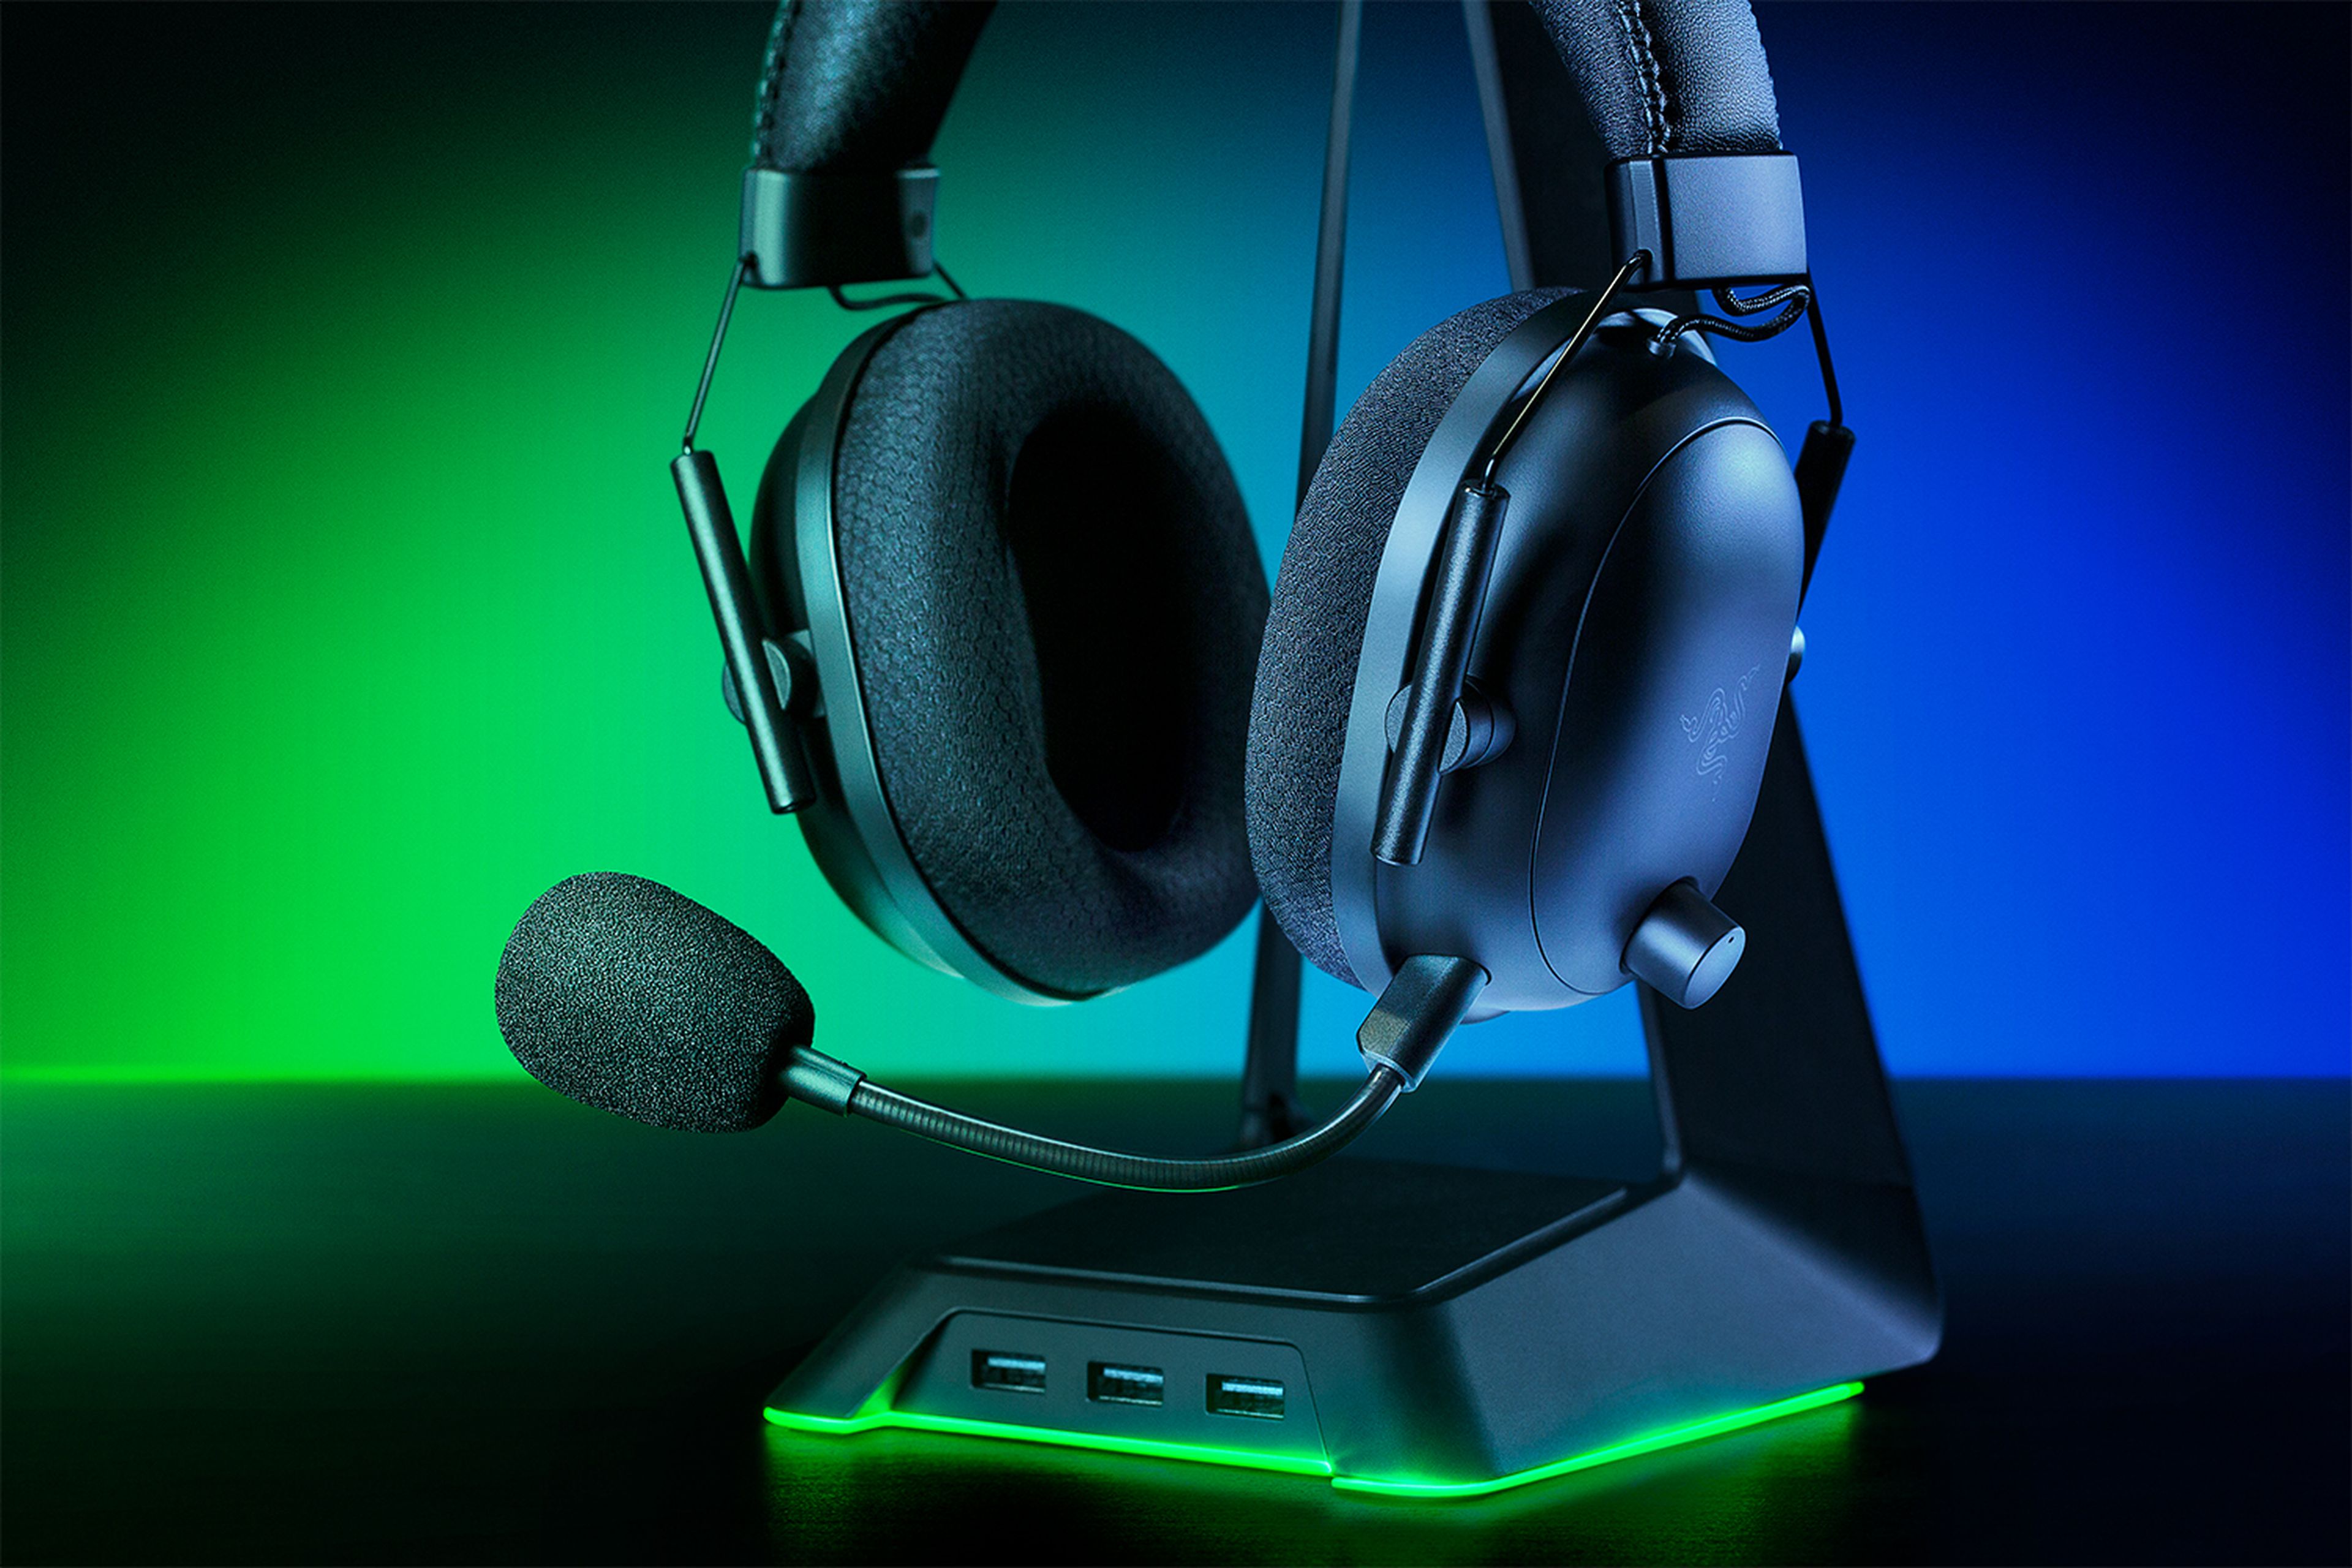 Headset gaming JBL Quantum 100 Blanco/Azul - Auriculares para consola - Los  mejores precios